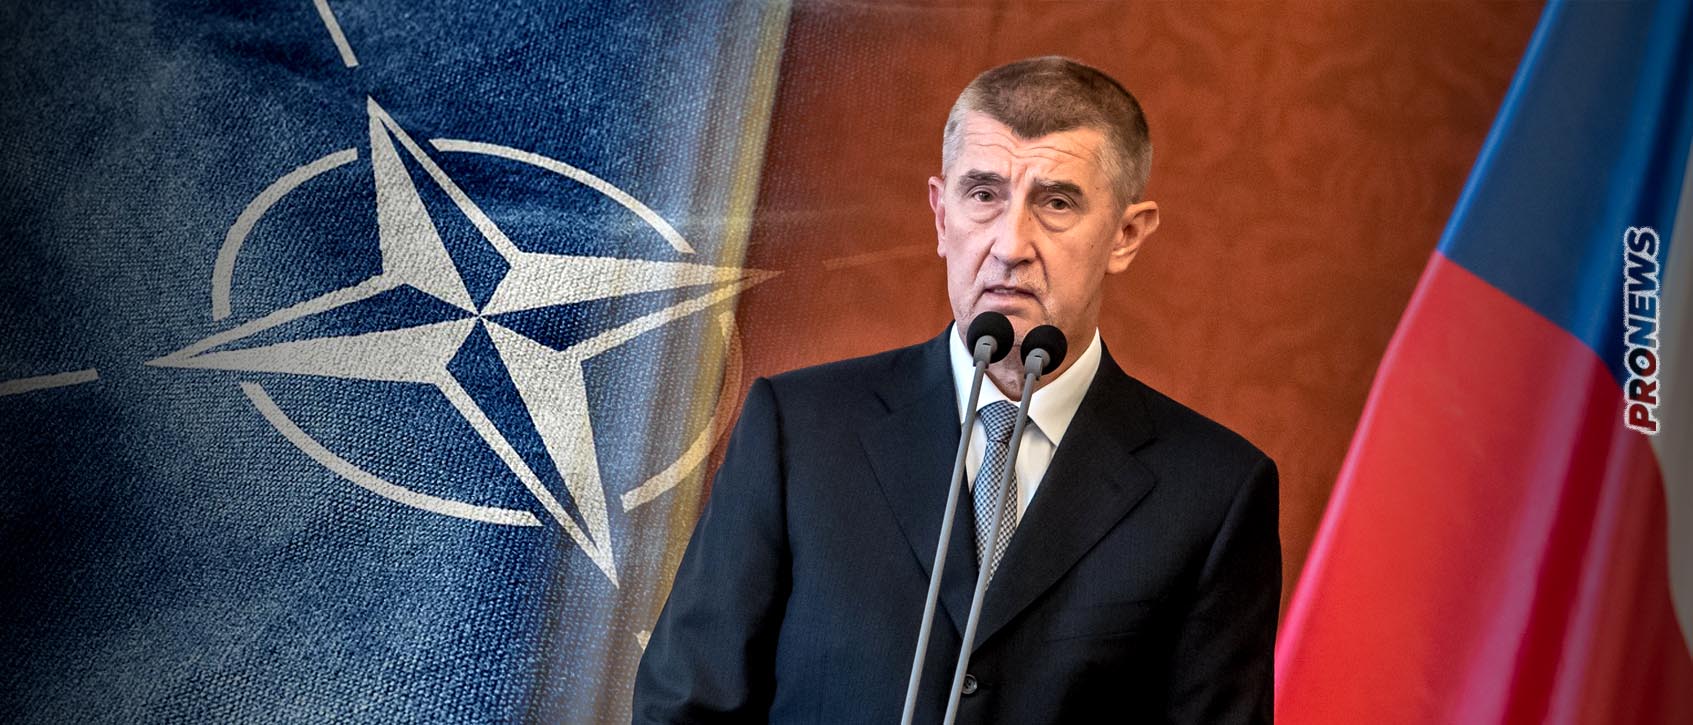 Τσεχία: Ο υποψήφιος Πρόεδρος Α.Μπάμπις αμφισβήτησε το Άρθρο 5 του NATO – «Δεν θα στείλω τα παιδιά μας να σκοτωθούν»!